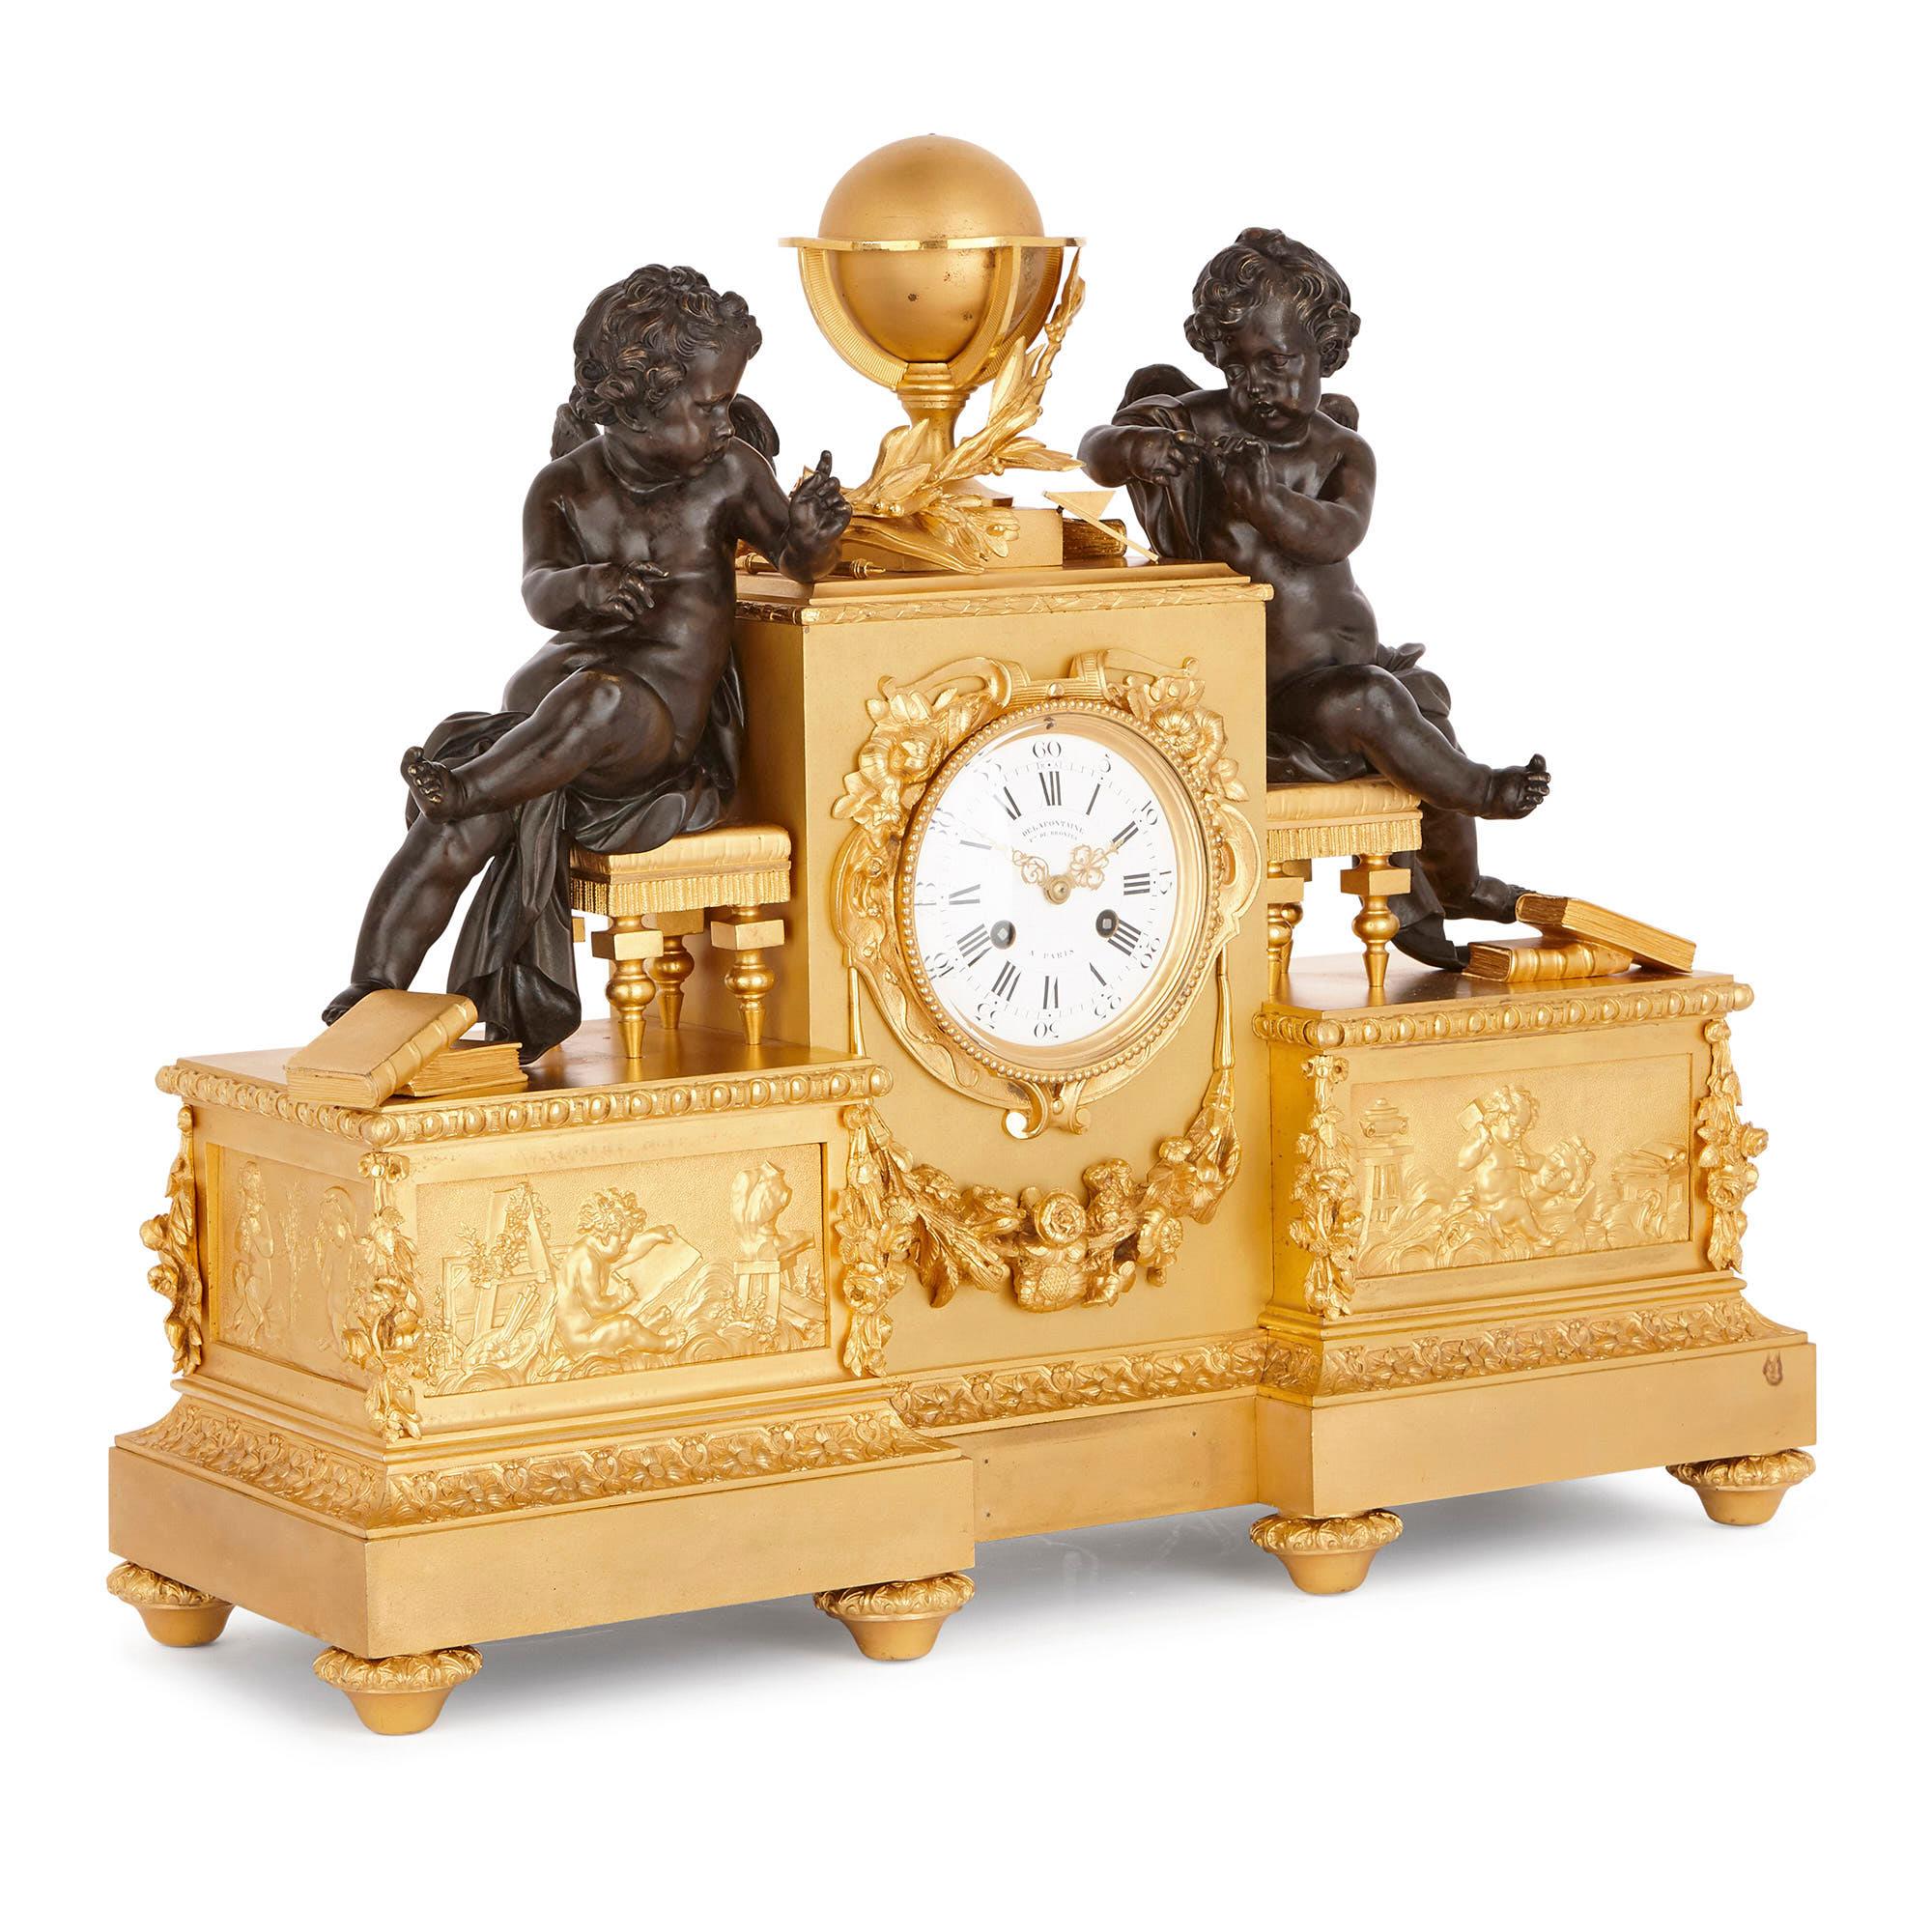 La célèbre fonderie de bronze française, Delafontaine, a créé cette remarquable horloge de cheminée. À l'époque de la création de cette pièce, vers 1860, la compagnie était dirigée par Auguste-Maximilien Delafontaine (1813-1892). La firme était